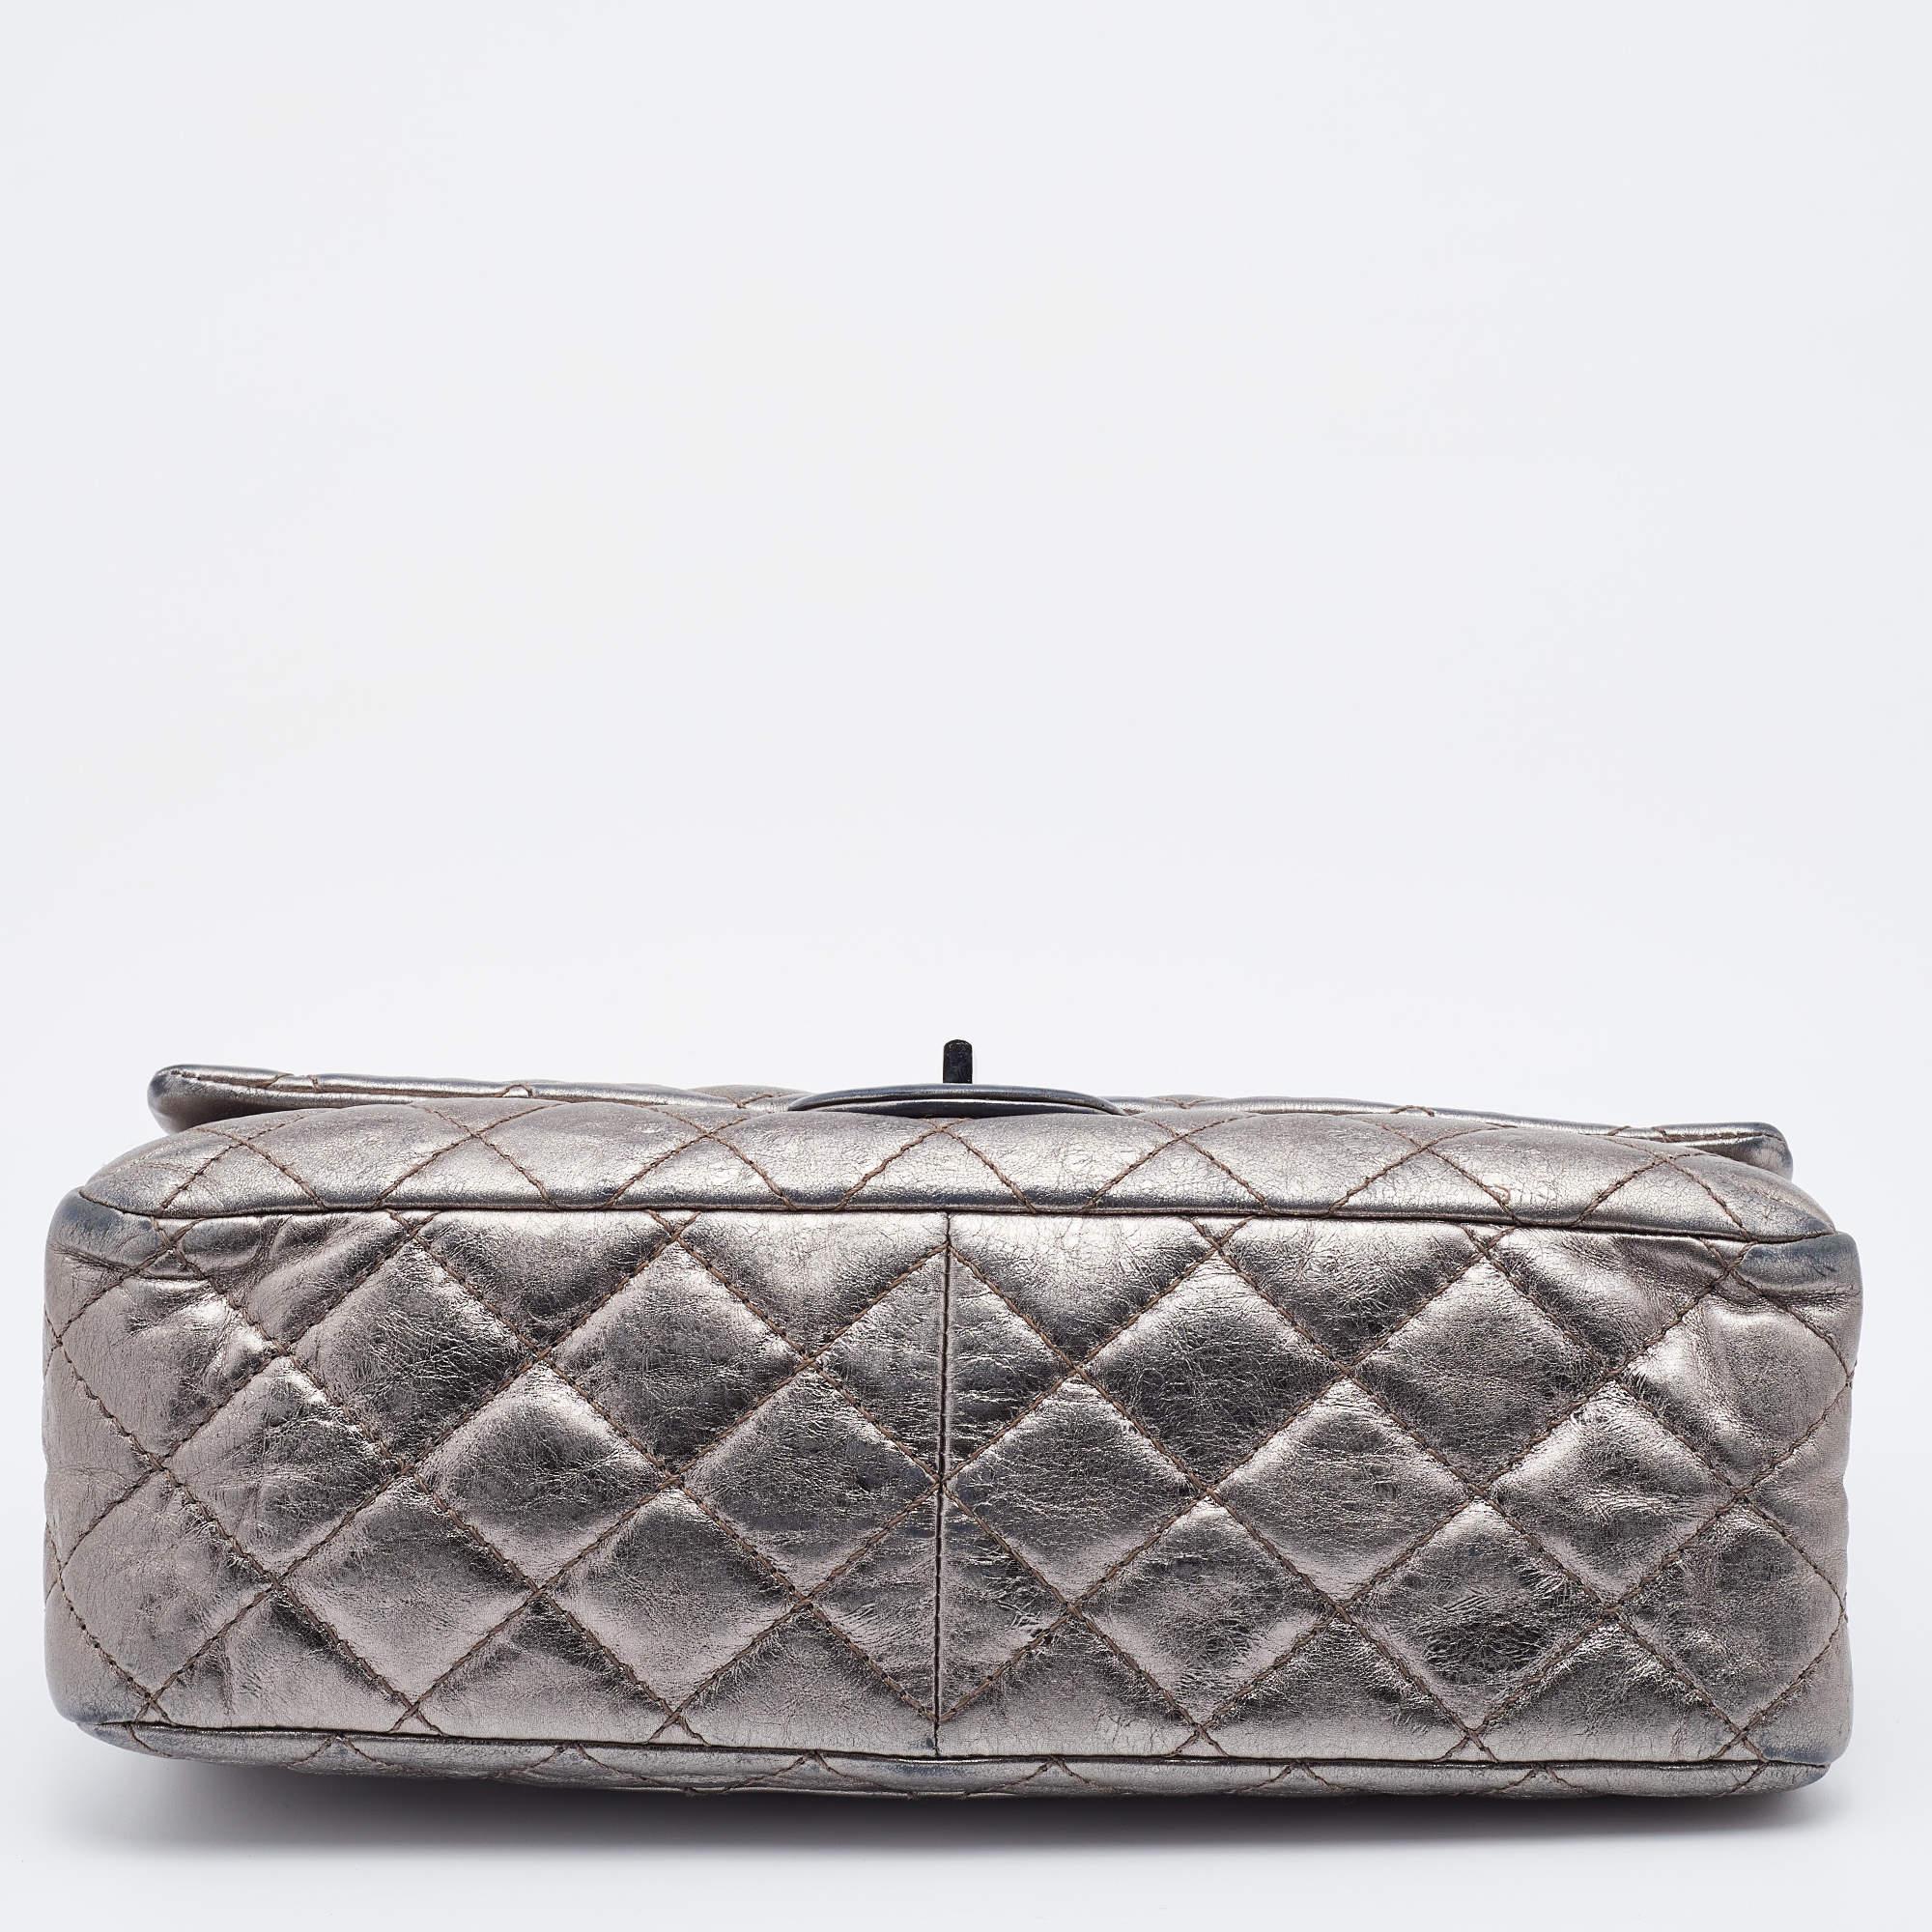 Chanel - Sac à rabat classique 226 en cuir matelassé gris métallisé, réédition 2.55 Pour femmes en vente